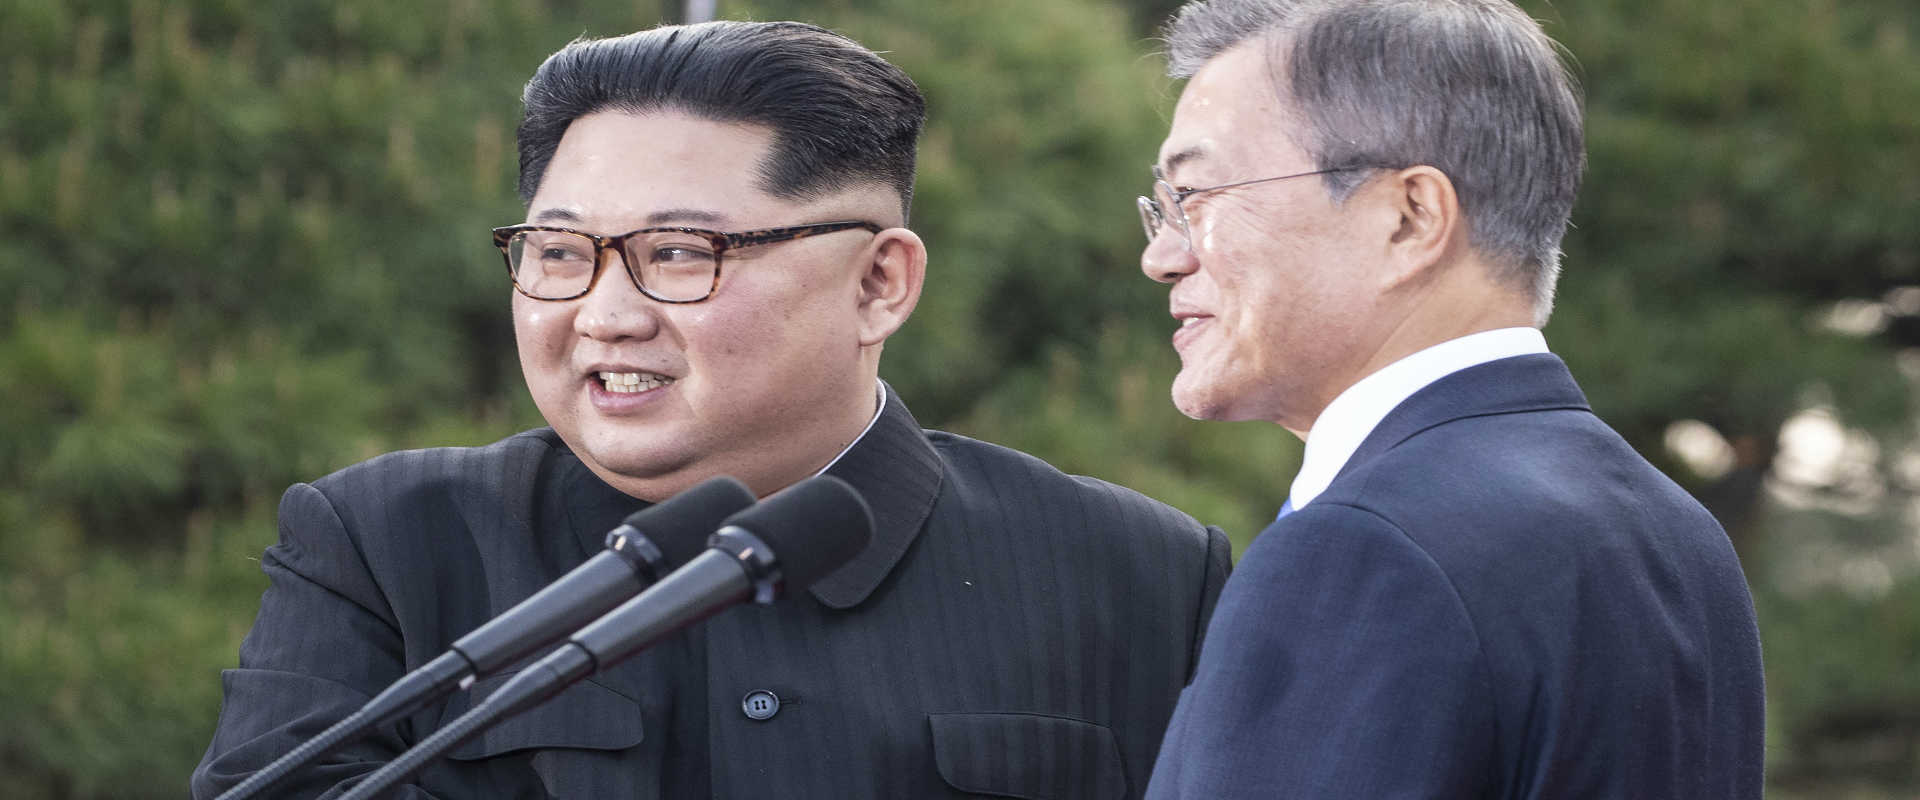 נשיאי קוריאה הצפונית וקוריאה הדרומית בפגישה